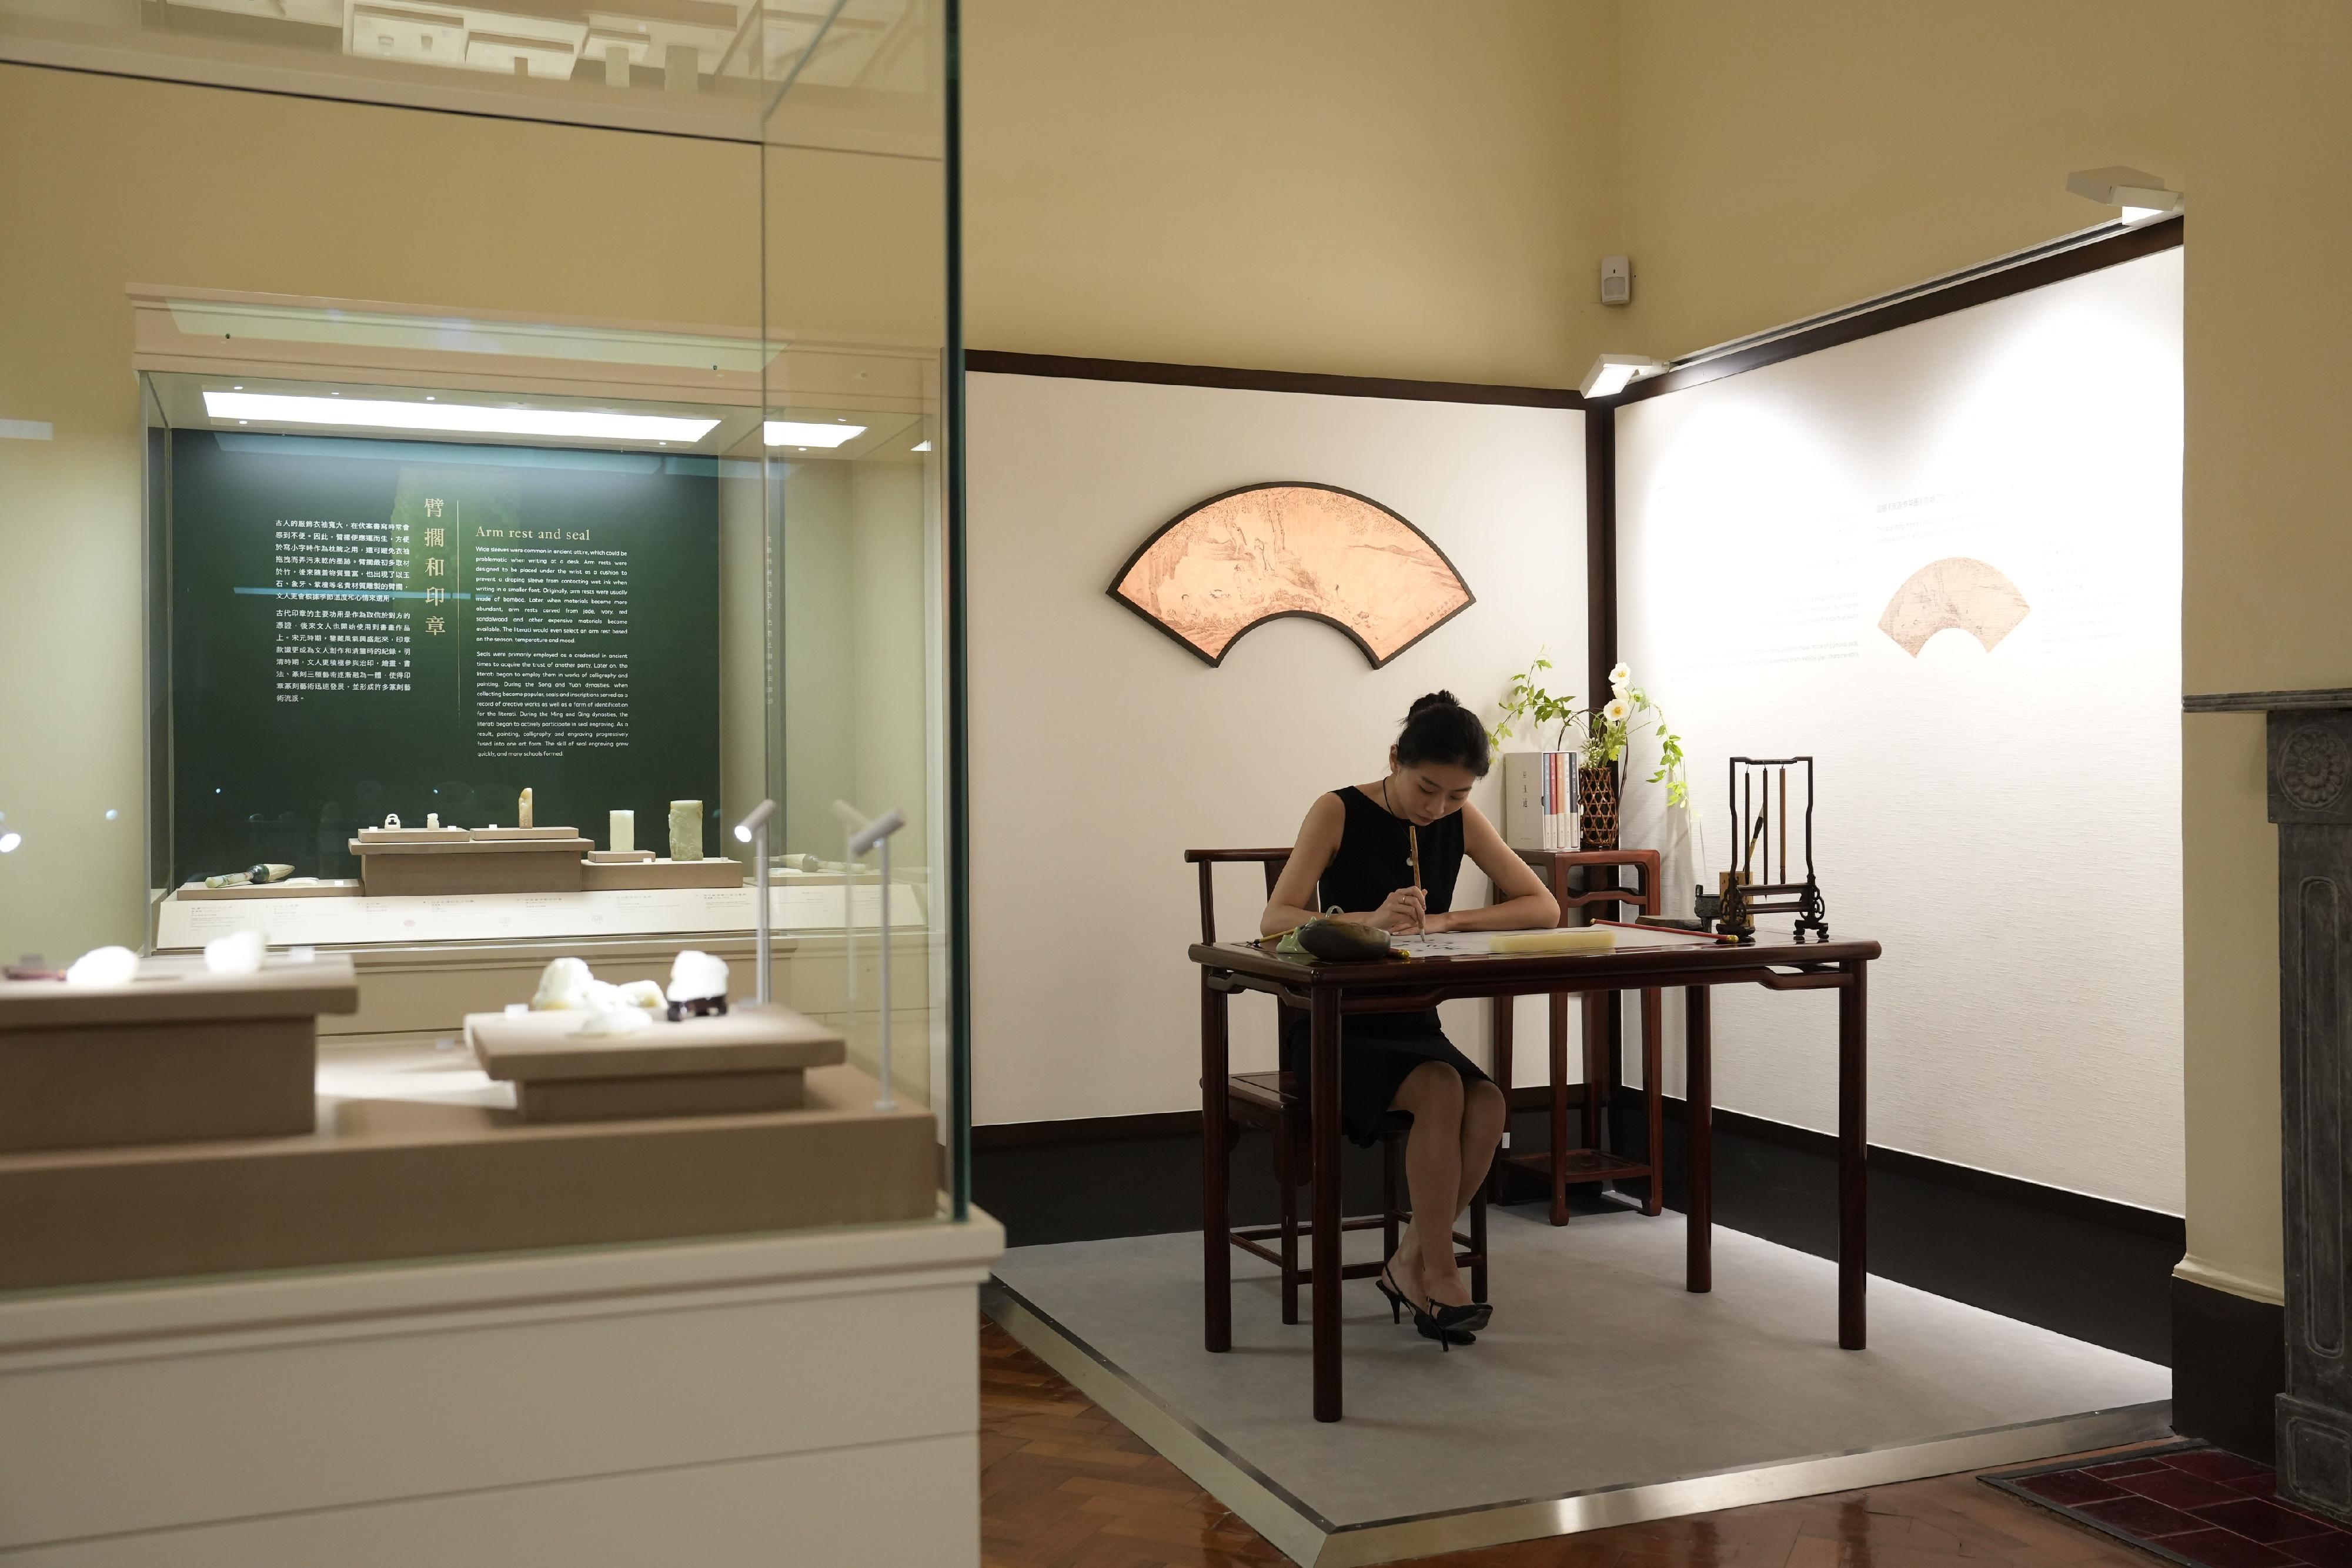 茶具文物館今日（八月二日）推出新展覽「文人文玩——中國文人用具與茶生活」，展出近百組明、清時期的文房雅玩和茶具器物，展現中國文人博學好古的審美文化。

